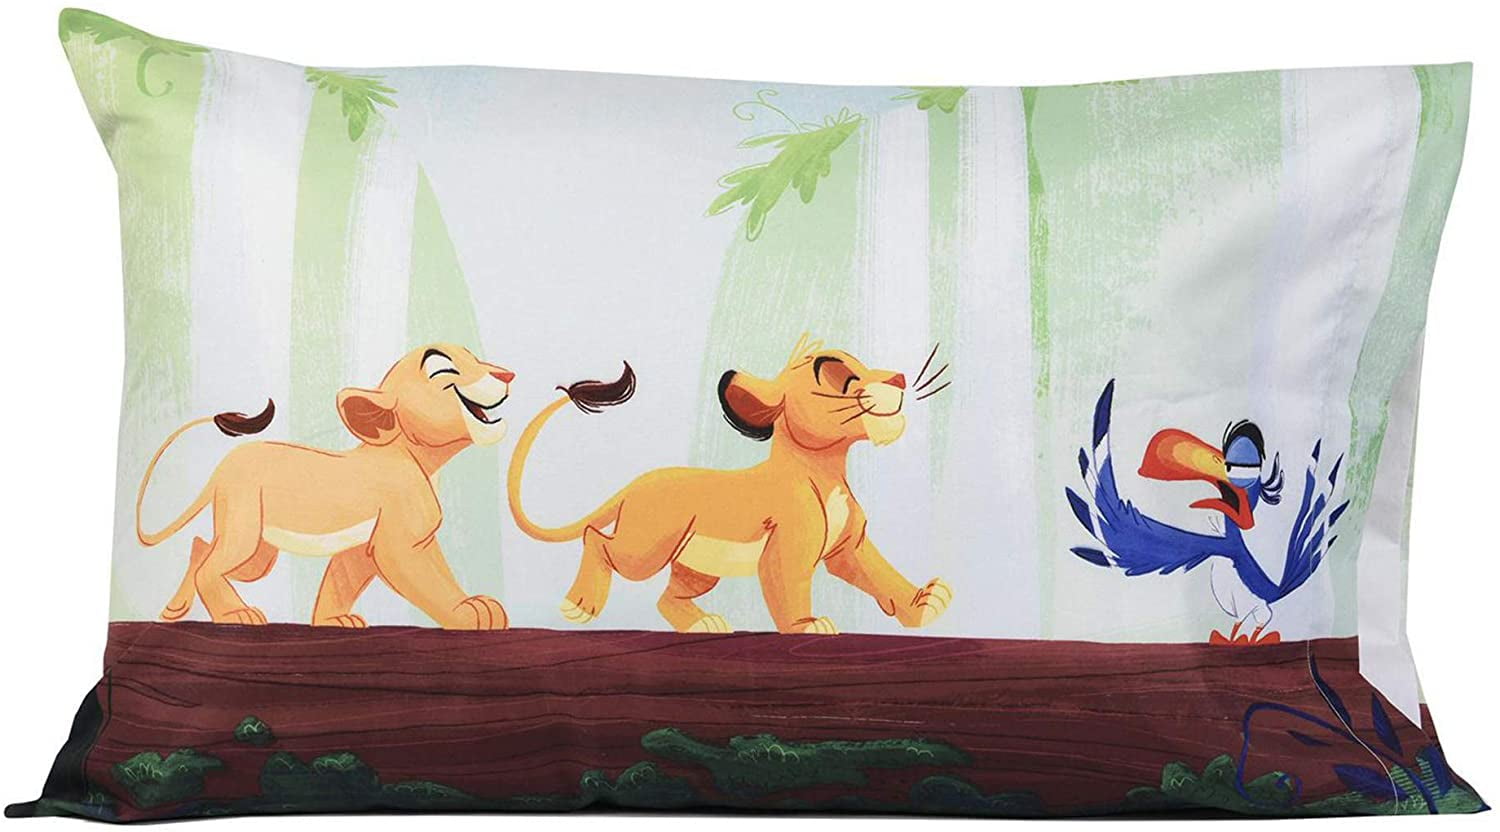 1 Piece Pillowcase Disney The Lion King Kids Pillowcase Standard Size-20" x 30" 